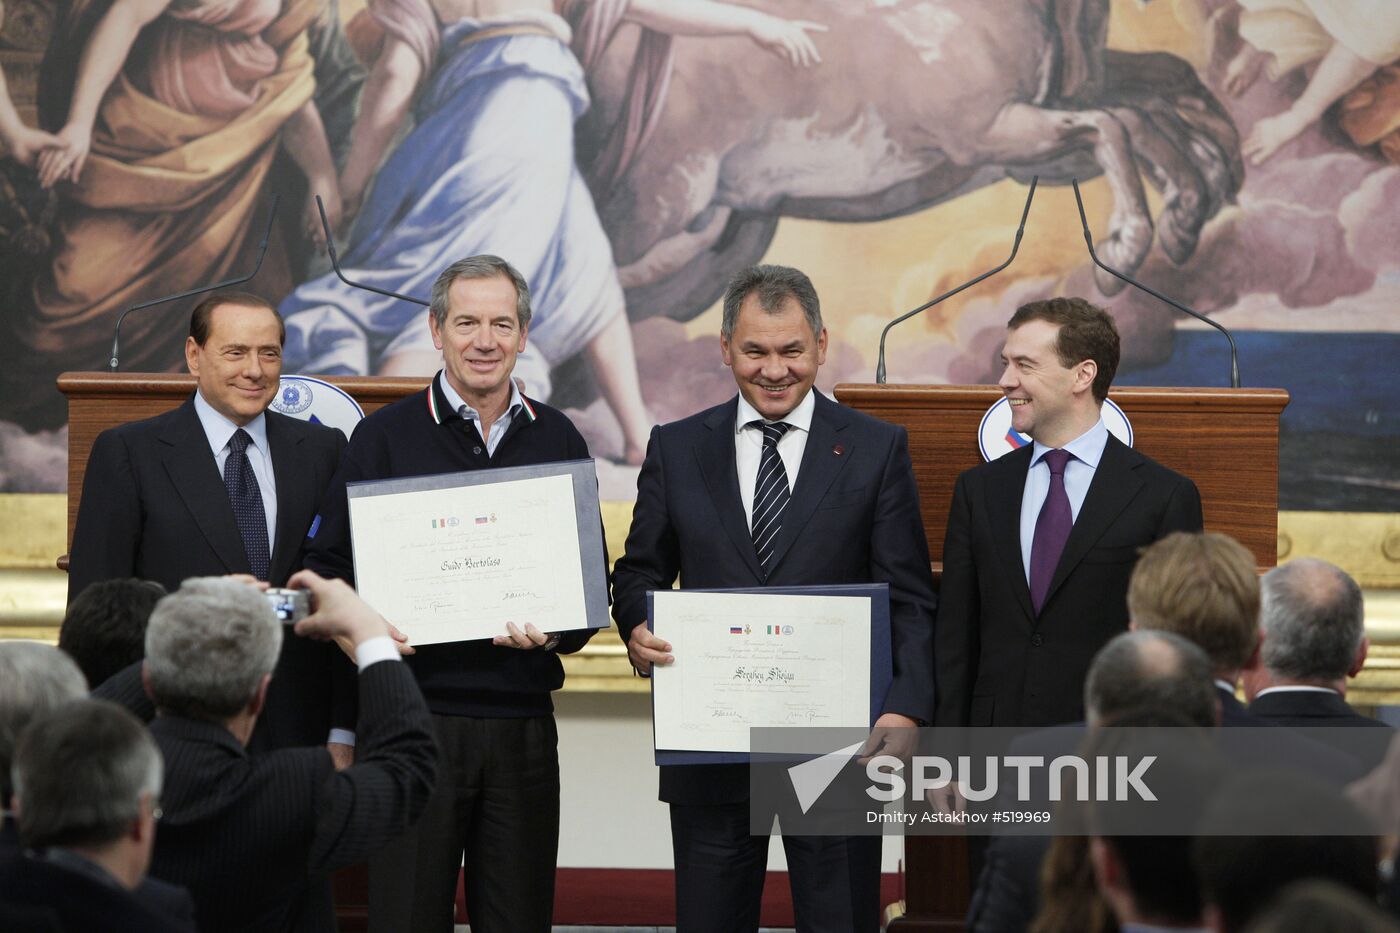 Dmitry Medvedev, Silvio Berlusconi give awards